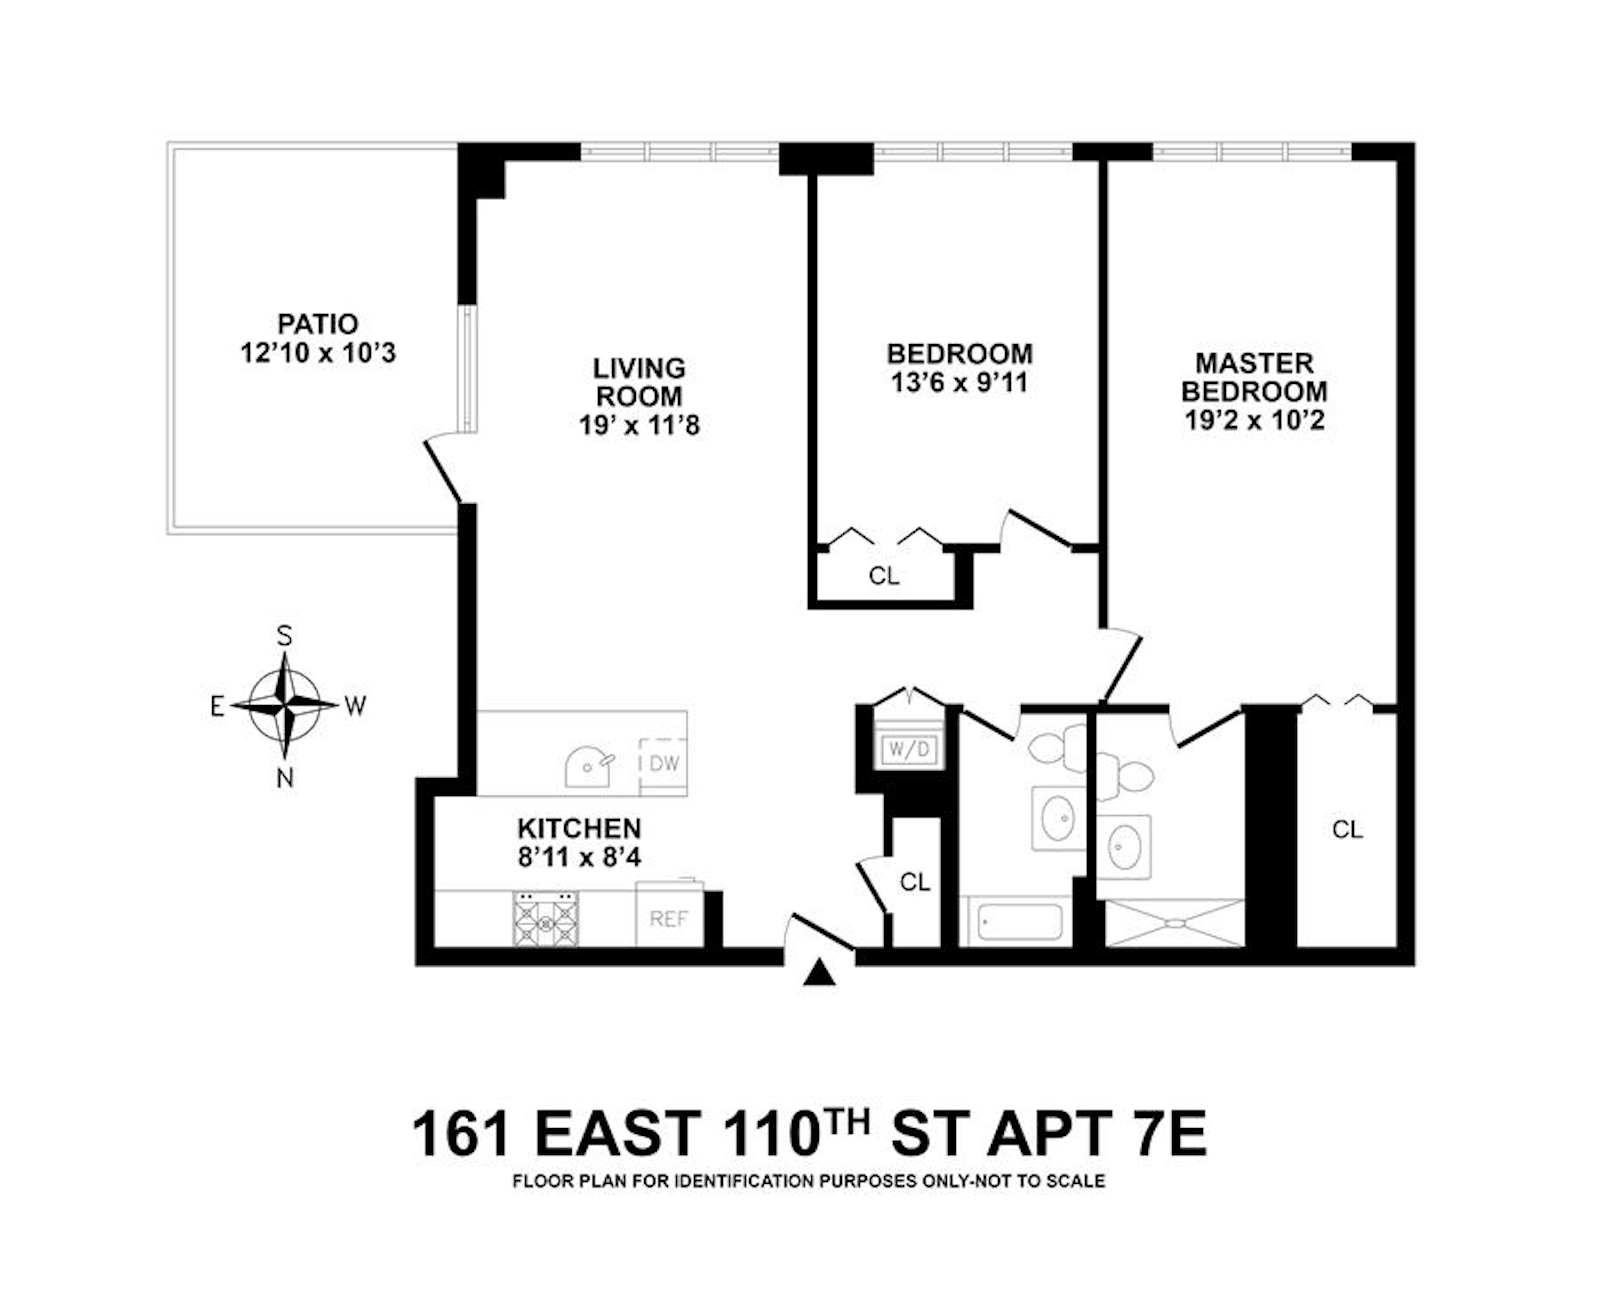 Floorplan for 161 East 110th Street, 7E